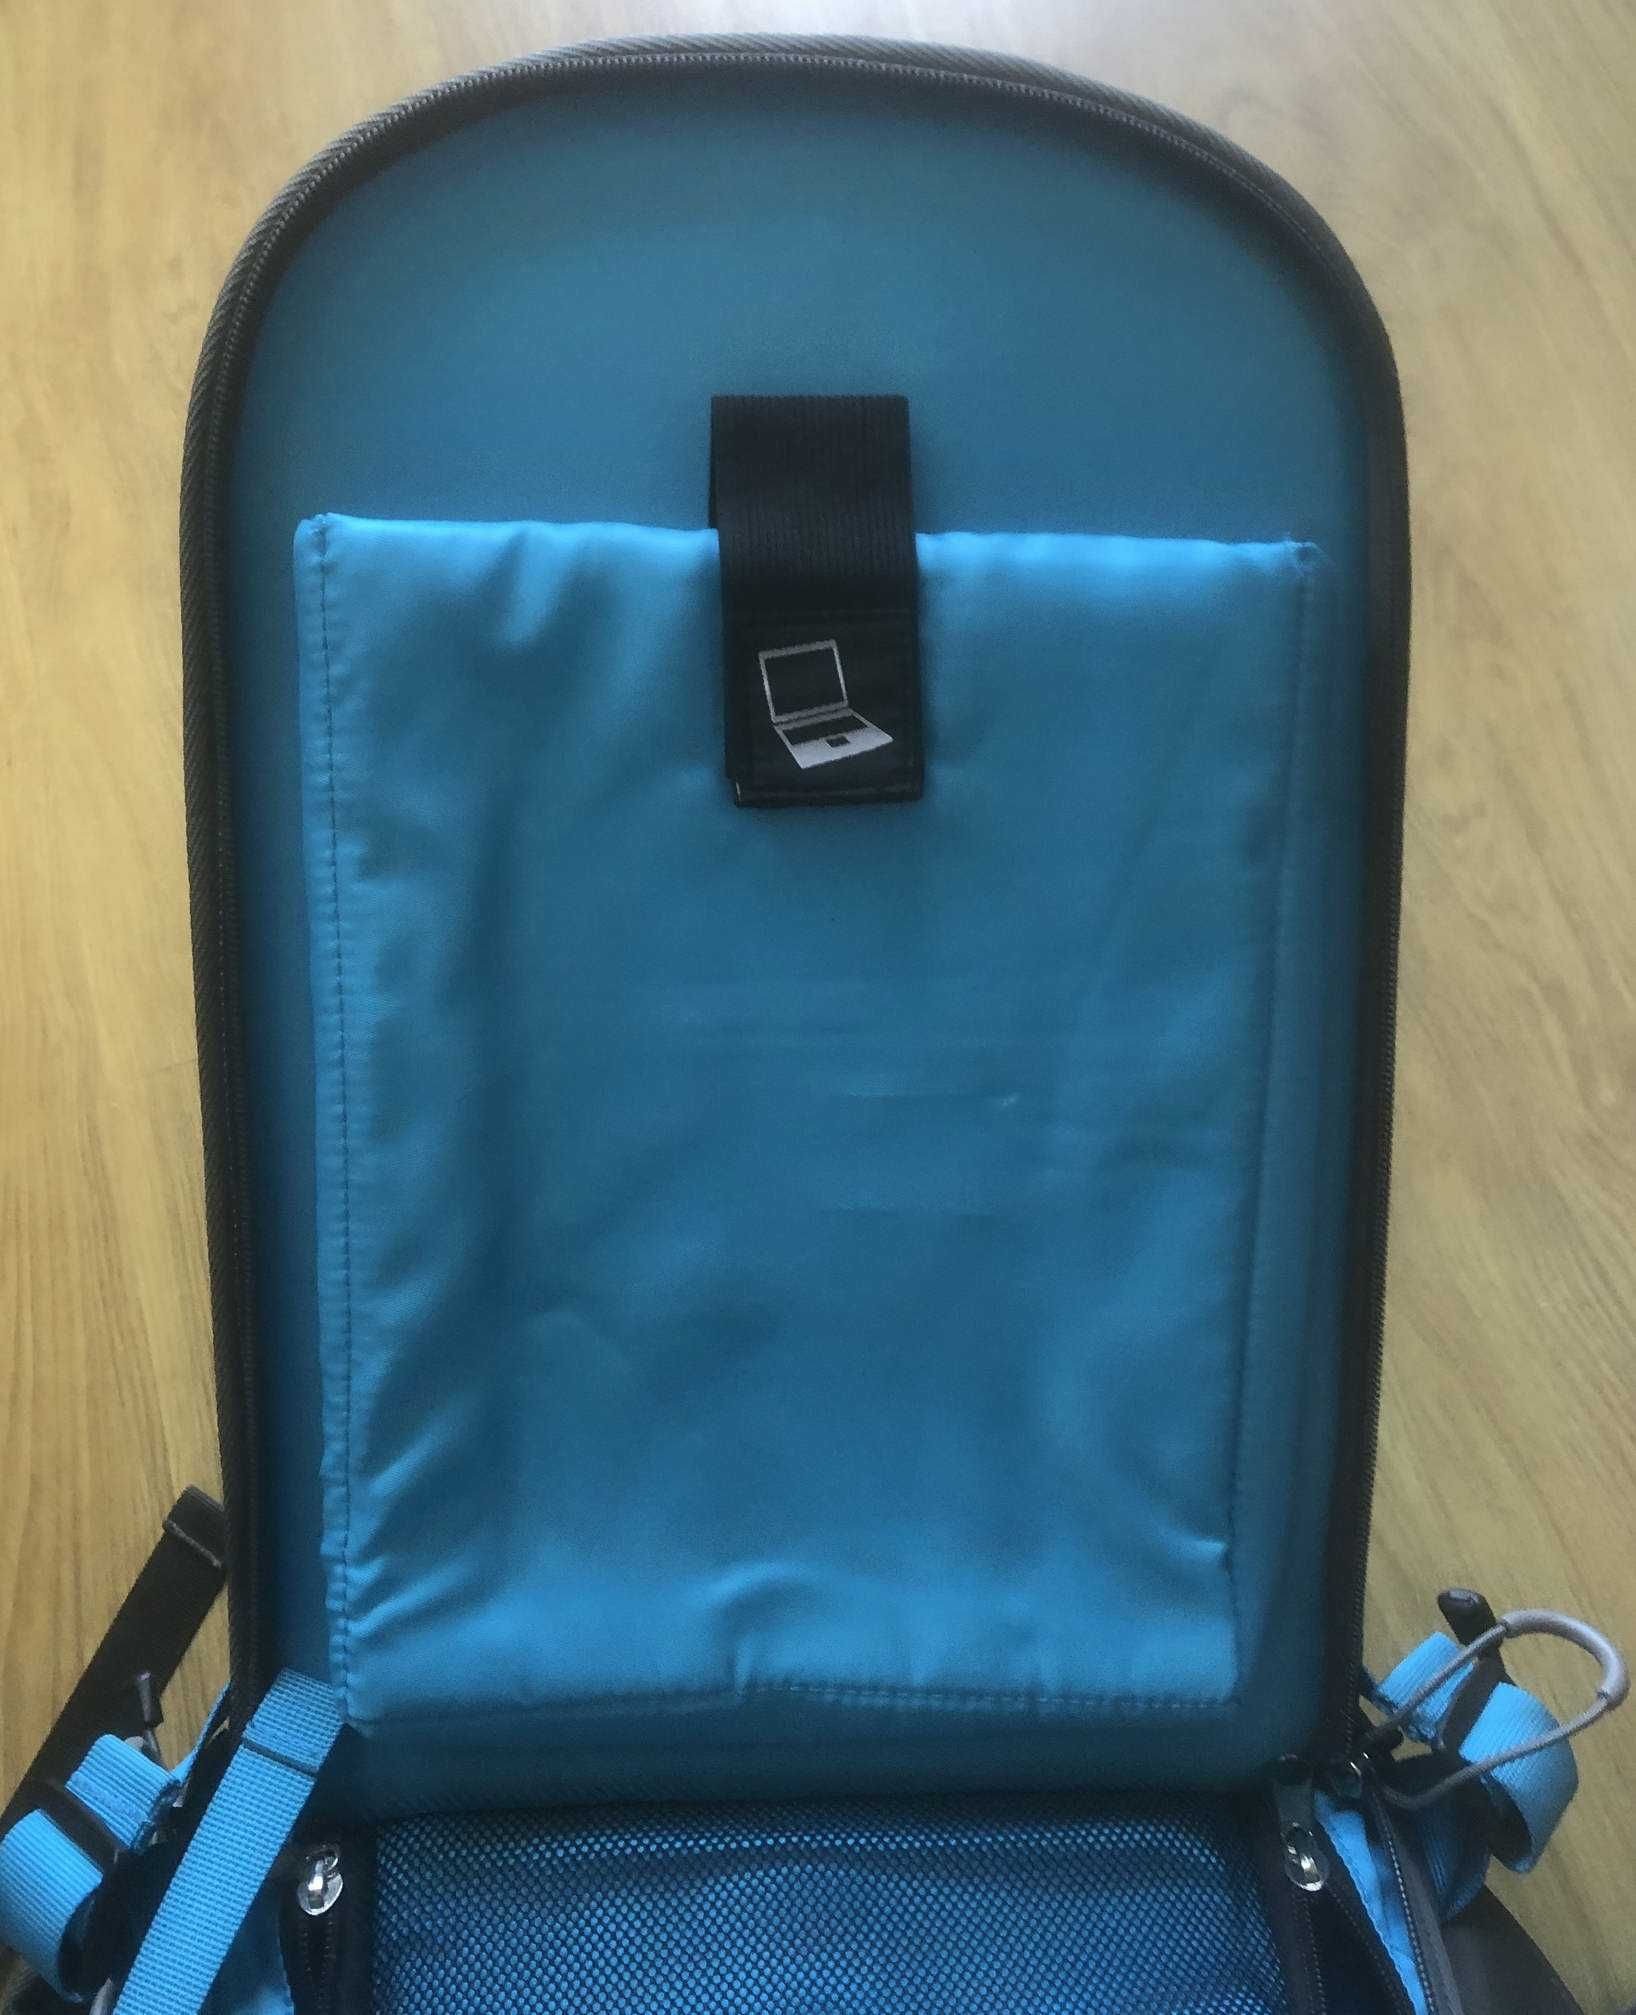 Plecak fotograficzny Dicallo szaro - niebieski, profesjonalny, nowy